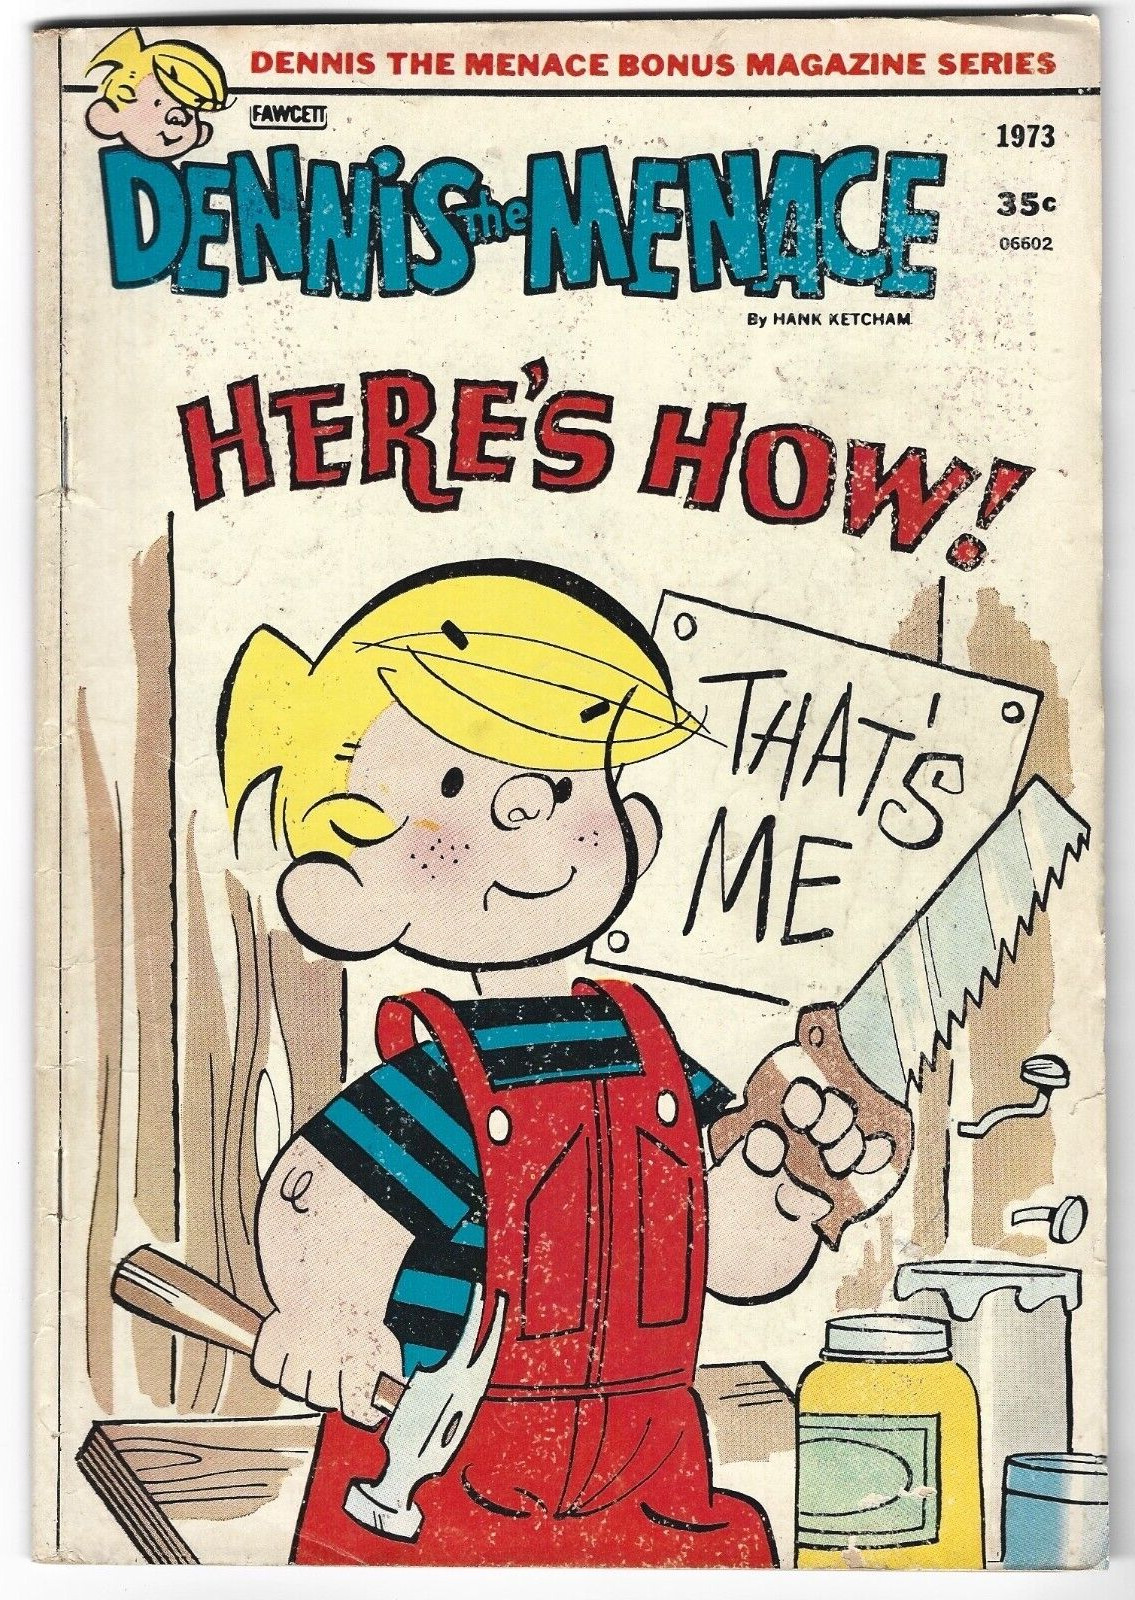 Dennis the Menace bonus magazine series 1973